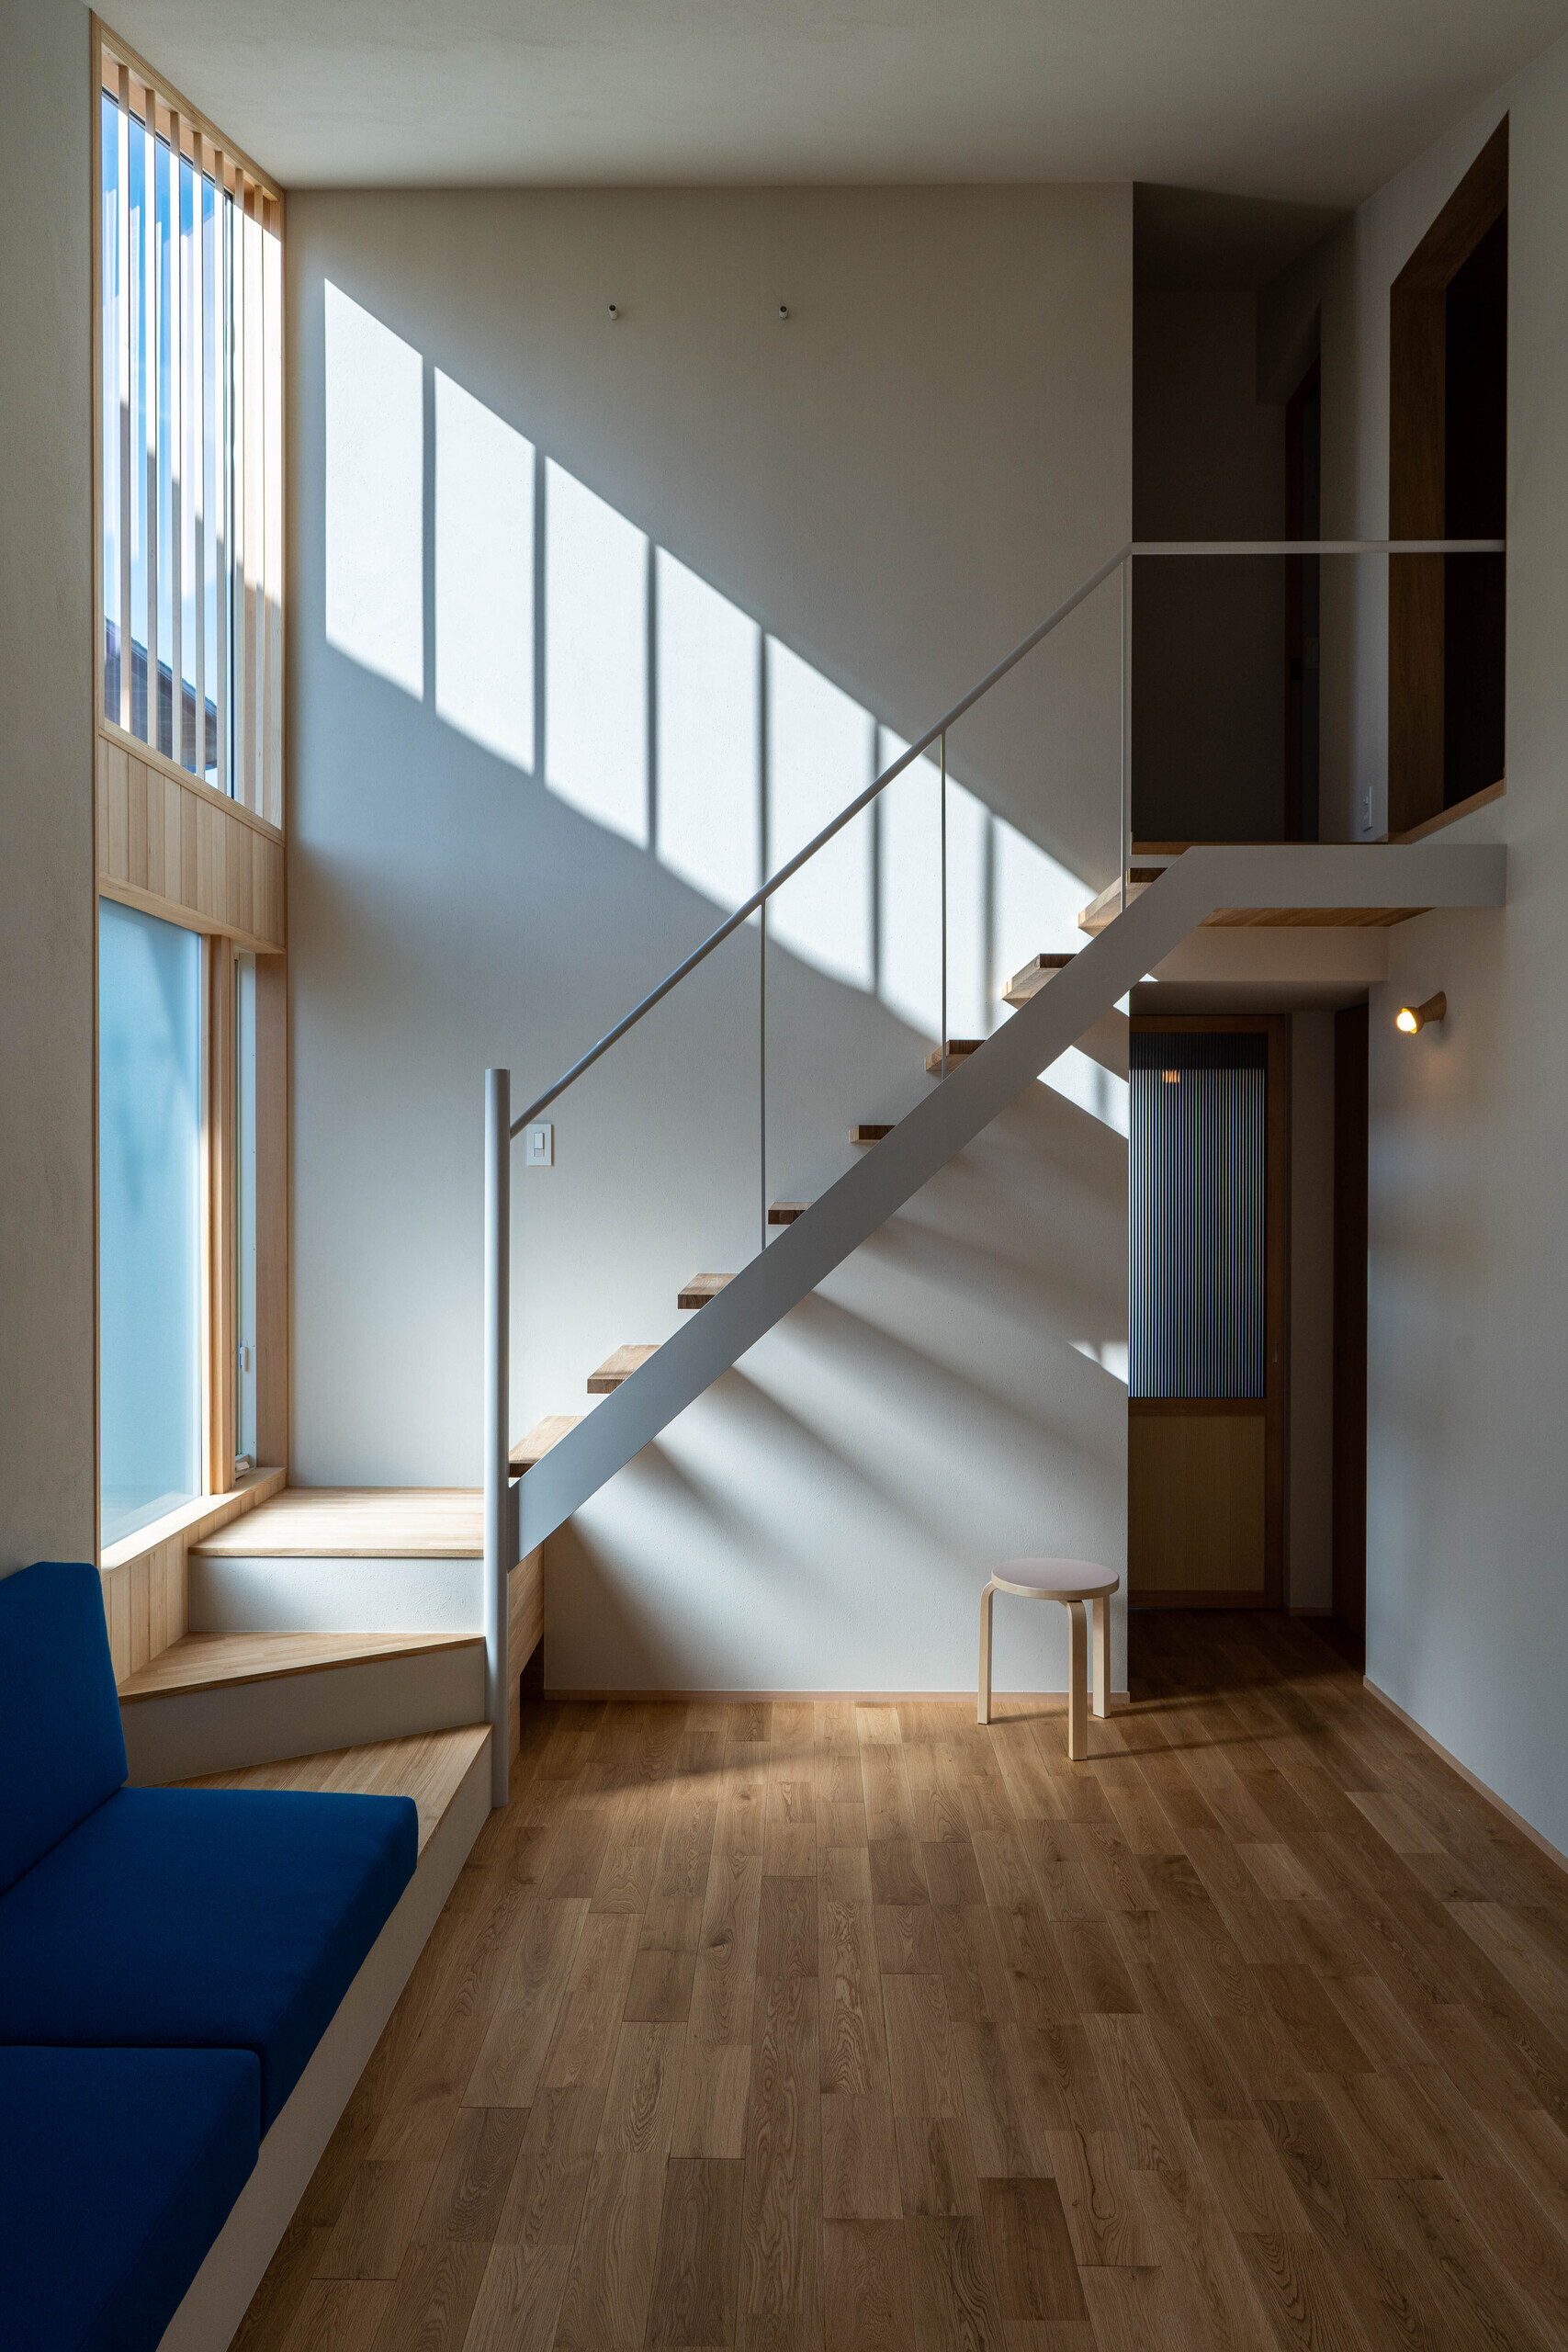 勾配天井のLDK空間スチール階段 | 平屋的に暮らす